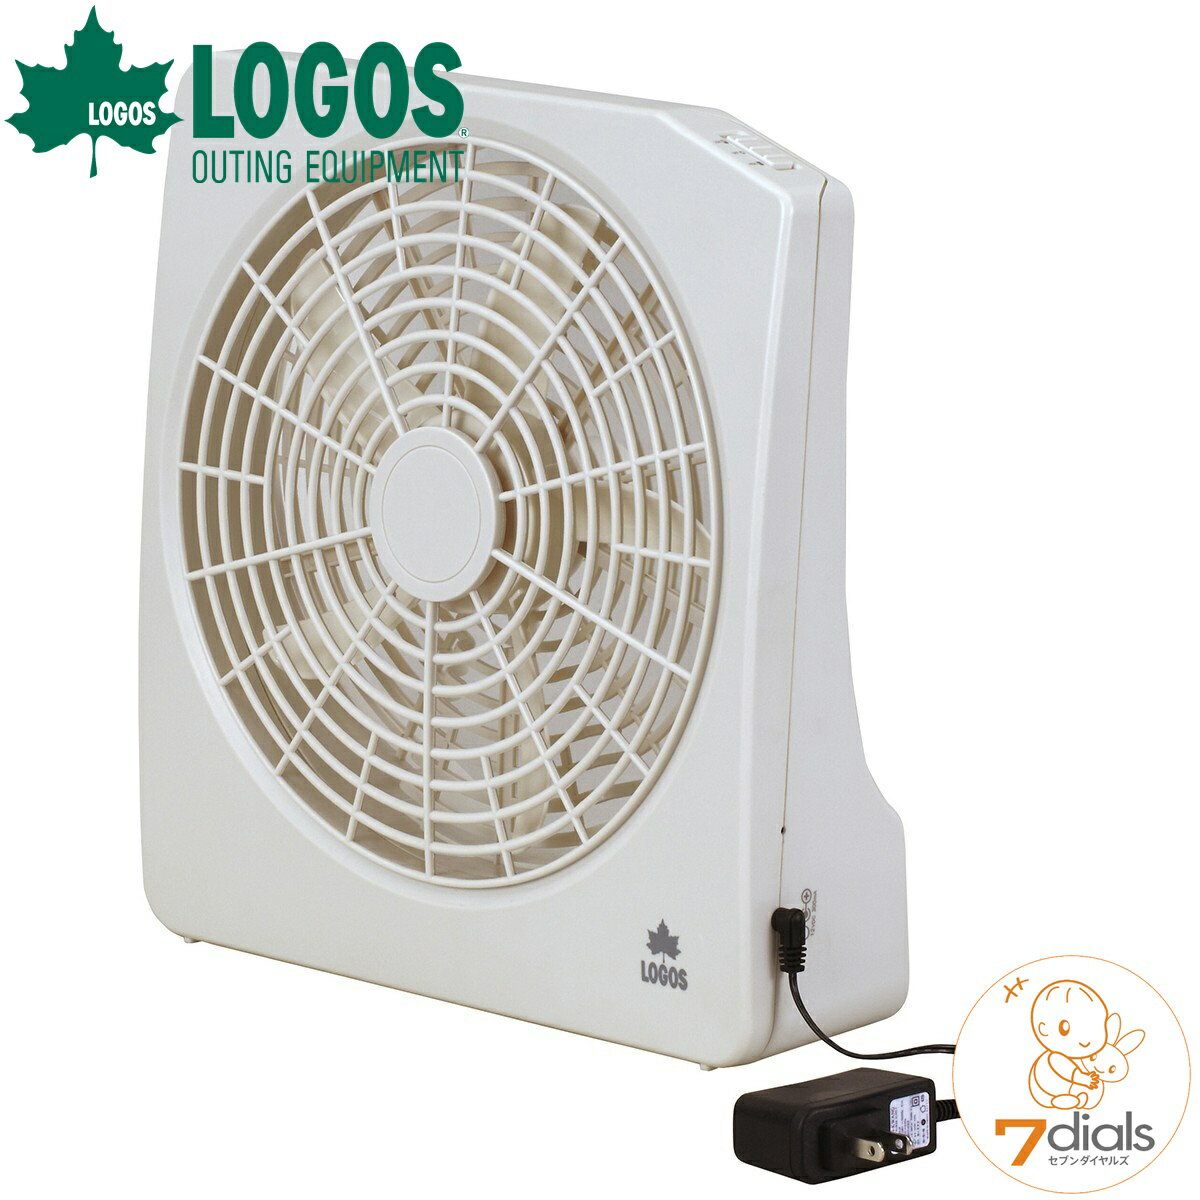 【10%OFFキャンペーン】【あす楽】LOGOS/ロゴス 2電源・どこでも扇風機(AC・電池)AC電源、乾電池で使用可能な2段階風量のコンパクト扇風機 アウトドアで使える扇風機【送料無料】